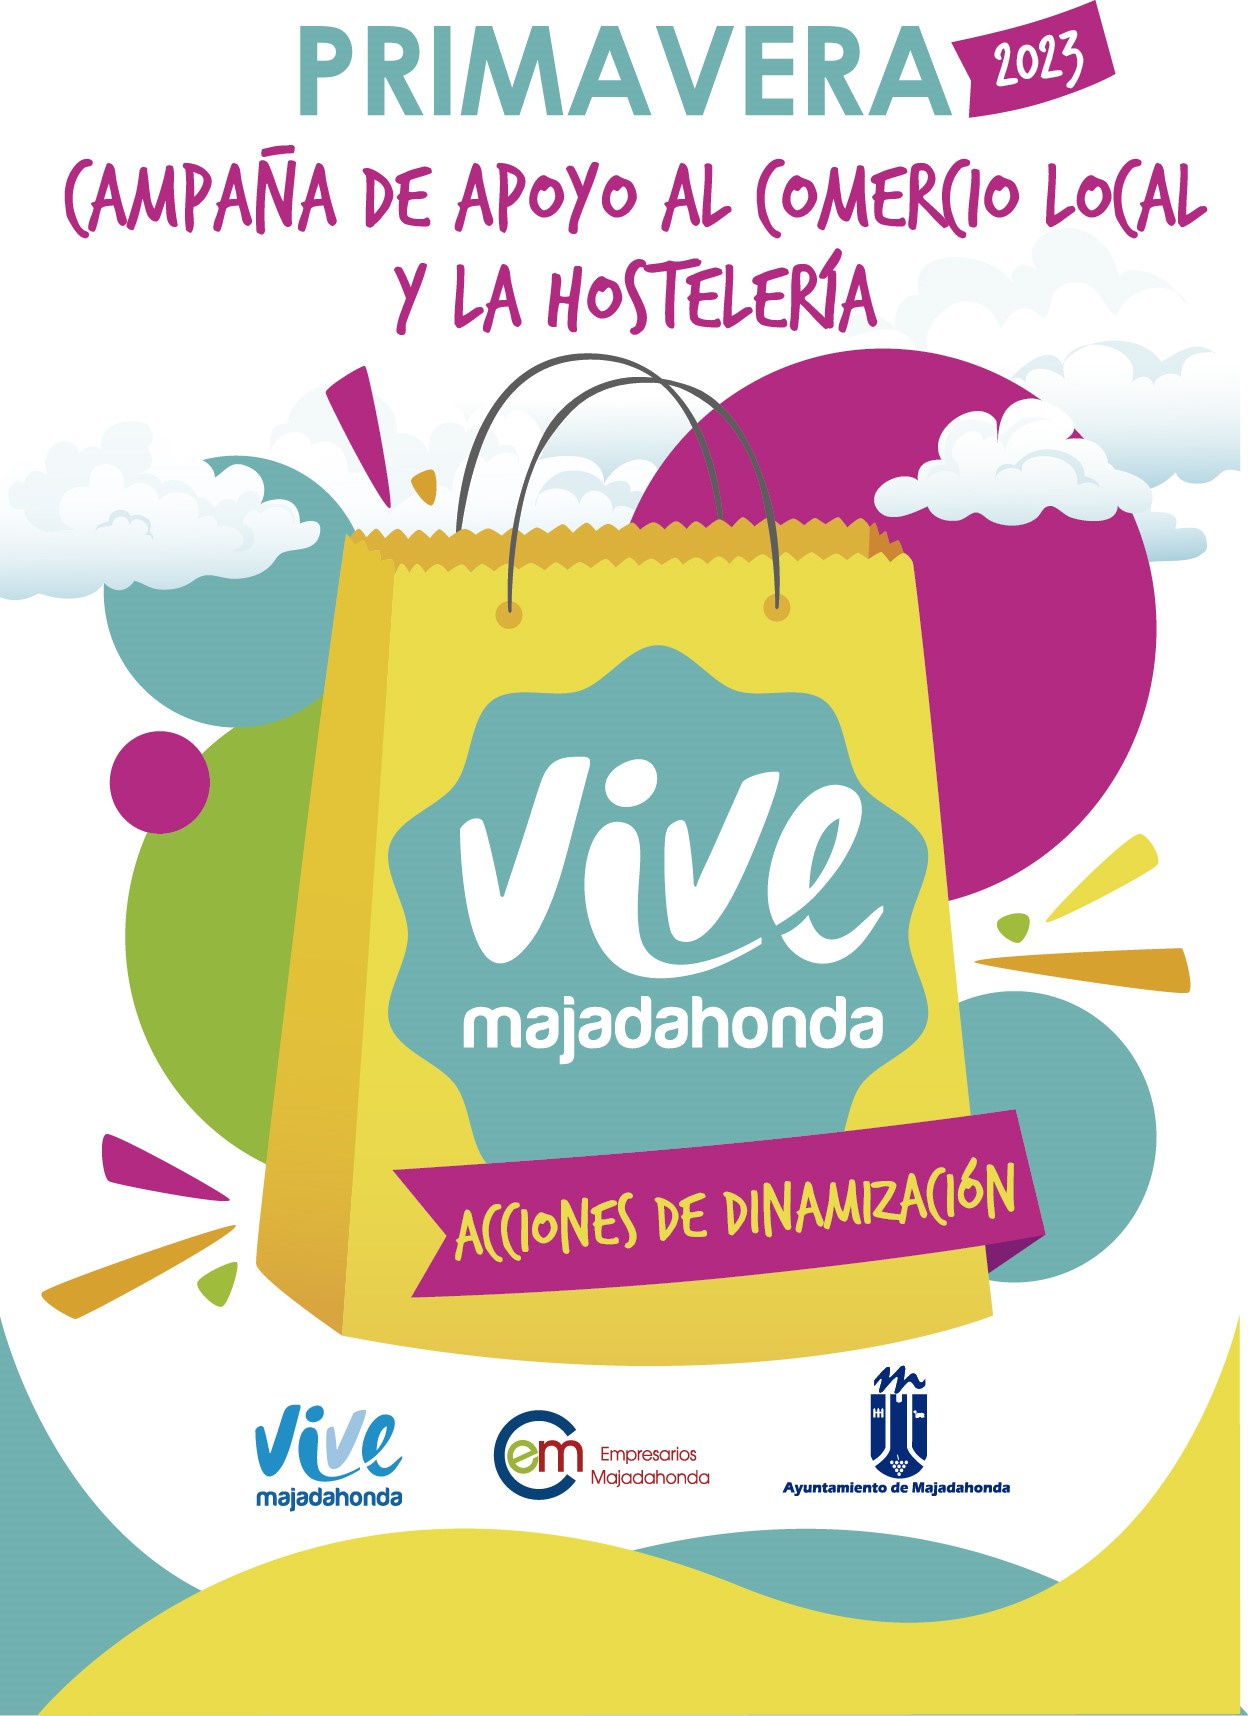 Majadahonda lanza su campaña Primavera 2023 de apoyo a comercio y hostelería local - La Viña